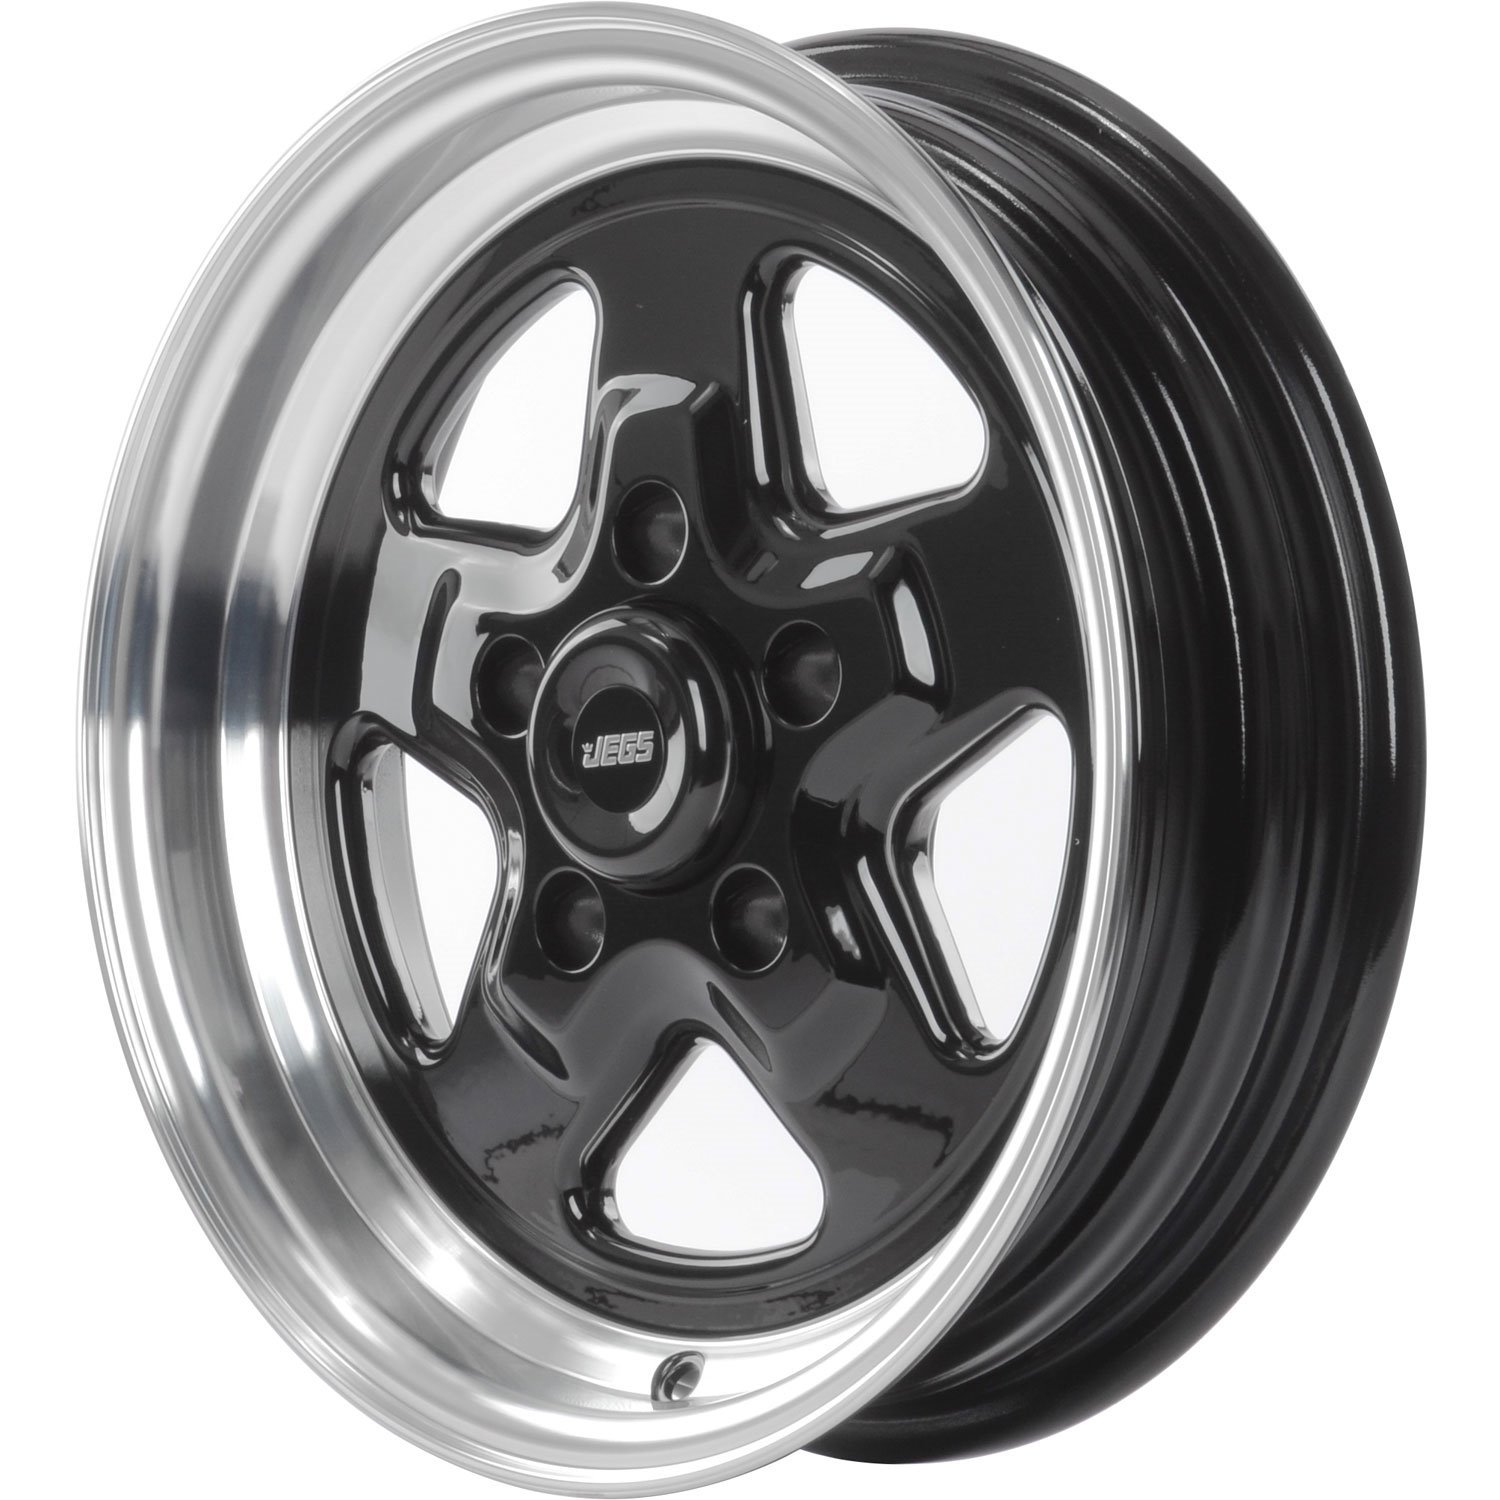 JEGS 66151: Sport Star 5-Spoke Wheel | Size: 15" x 4" | Bolt Pattern: 5 x  4.75" | Cast Aluminum | Polished Outer Lip w/ Black Spokes - JEGS